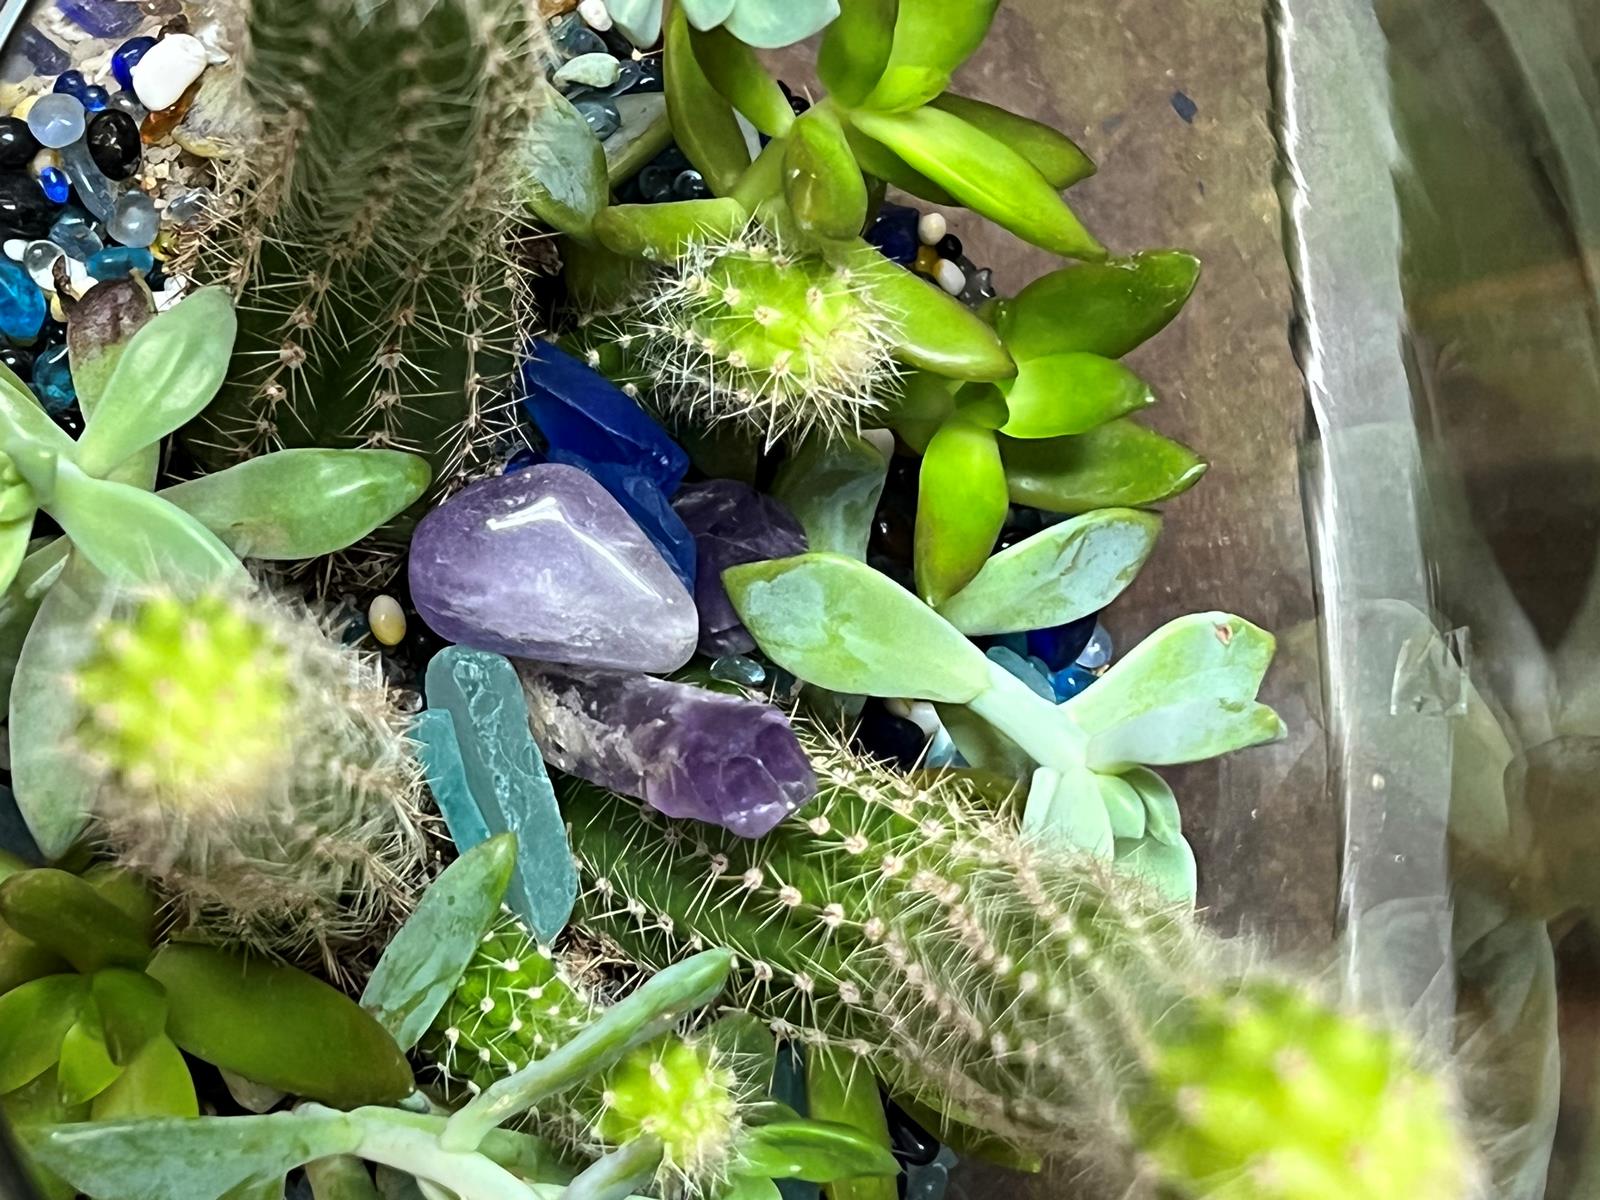 Cactus tropical w purple Chrystal succulent w blue stones  3